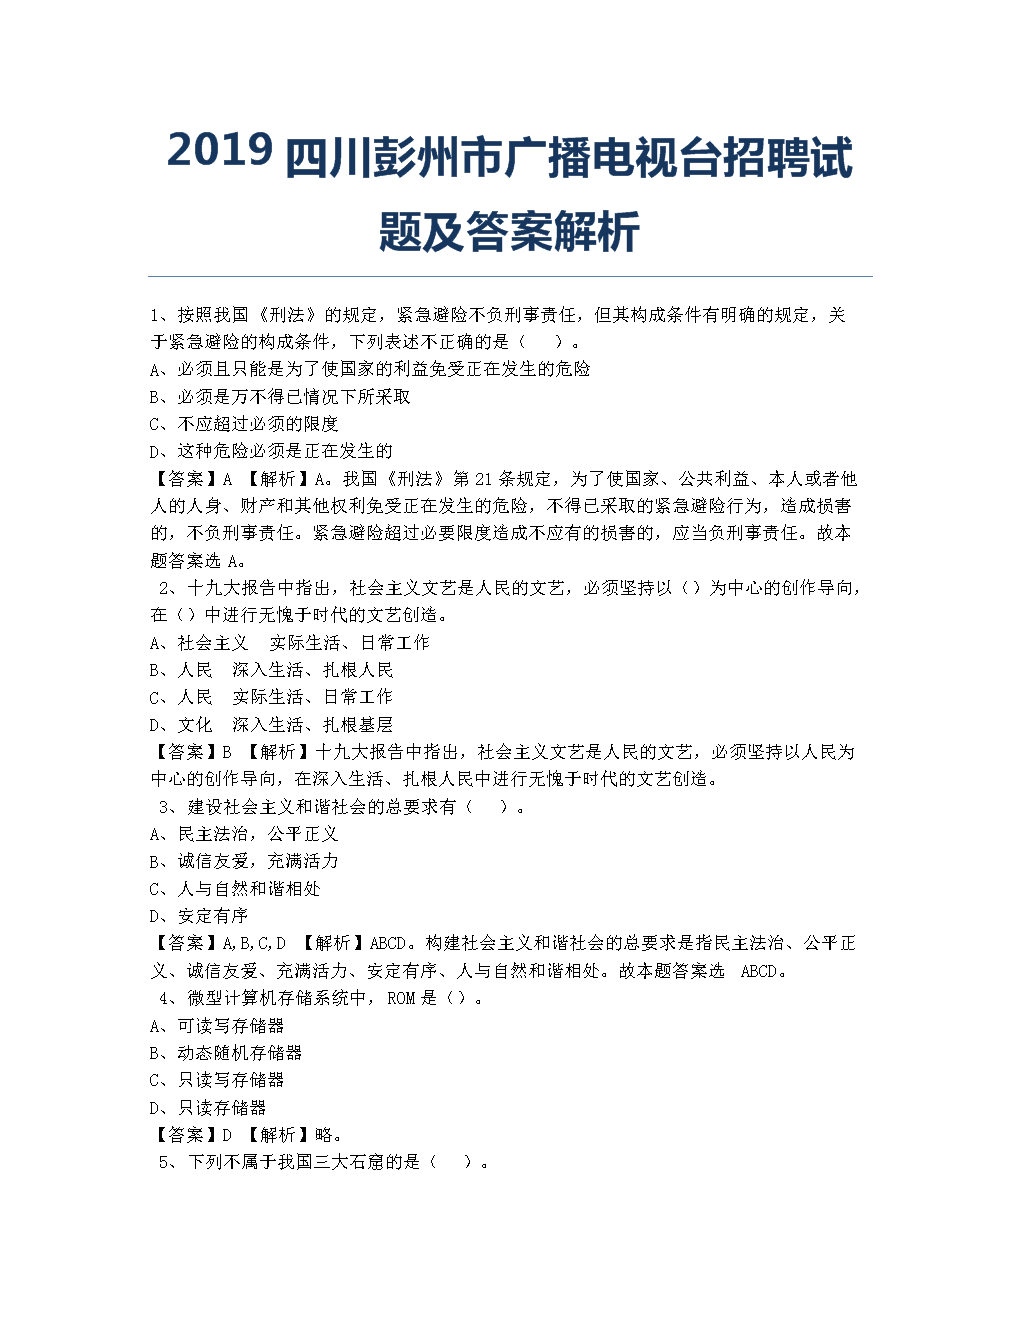 四川广播电视台2022年招聘配图